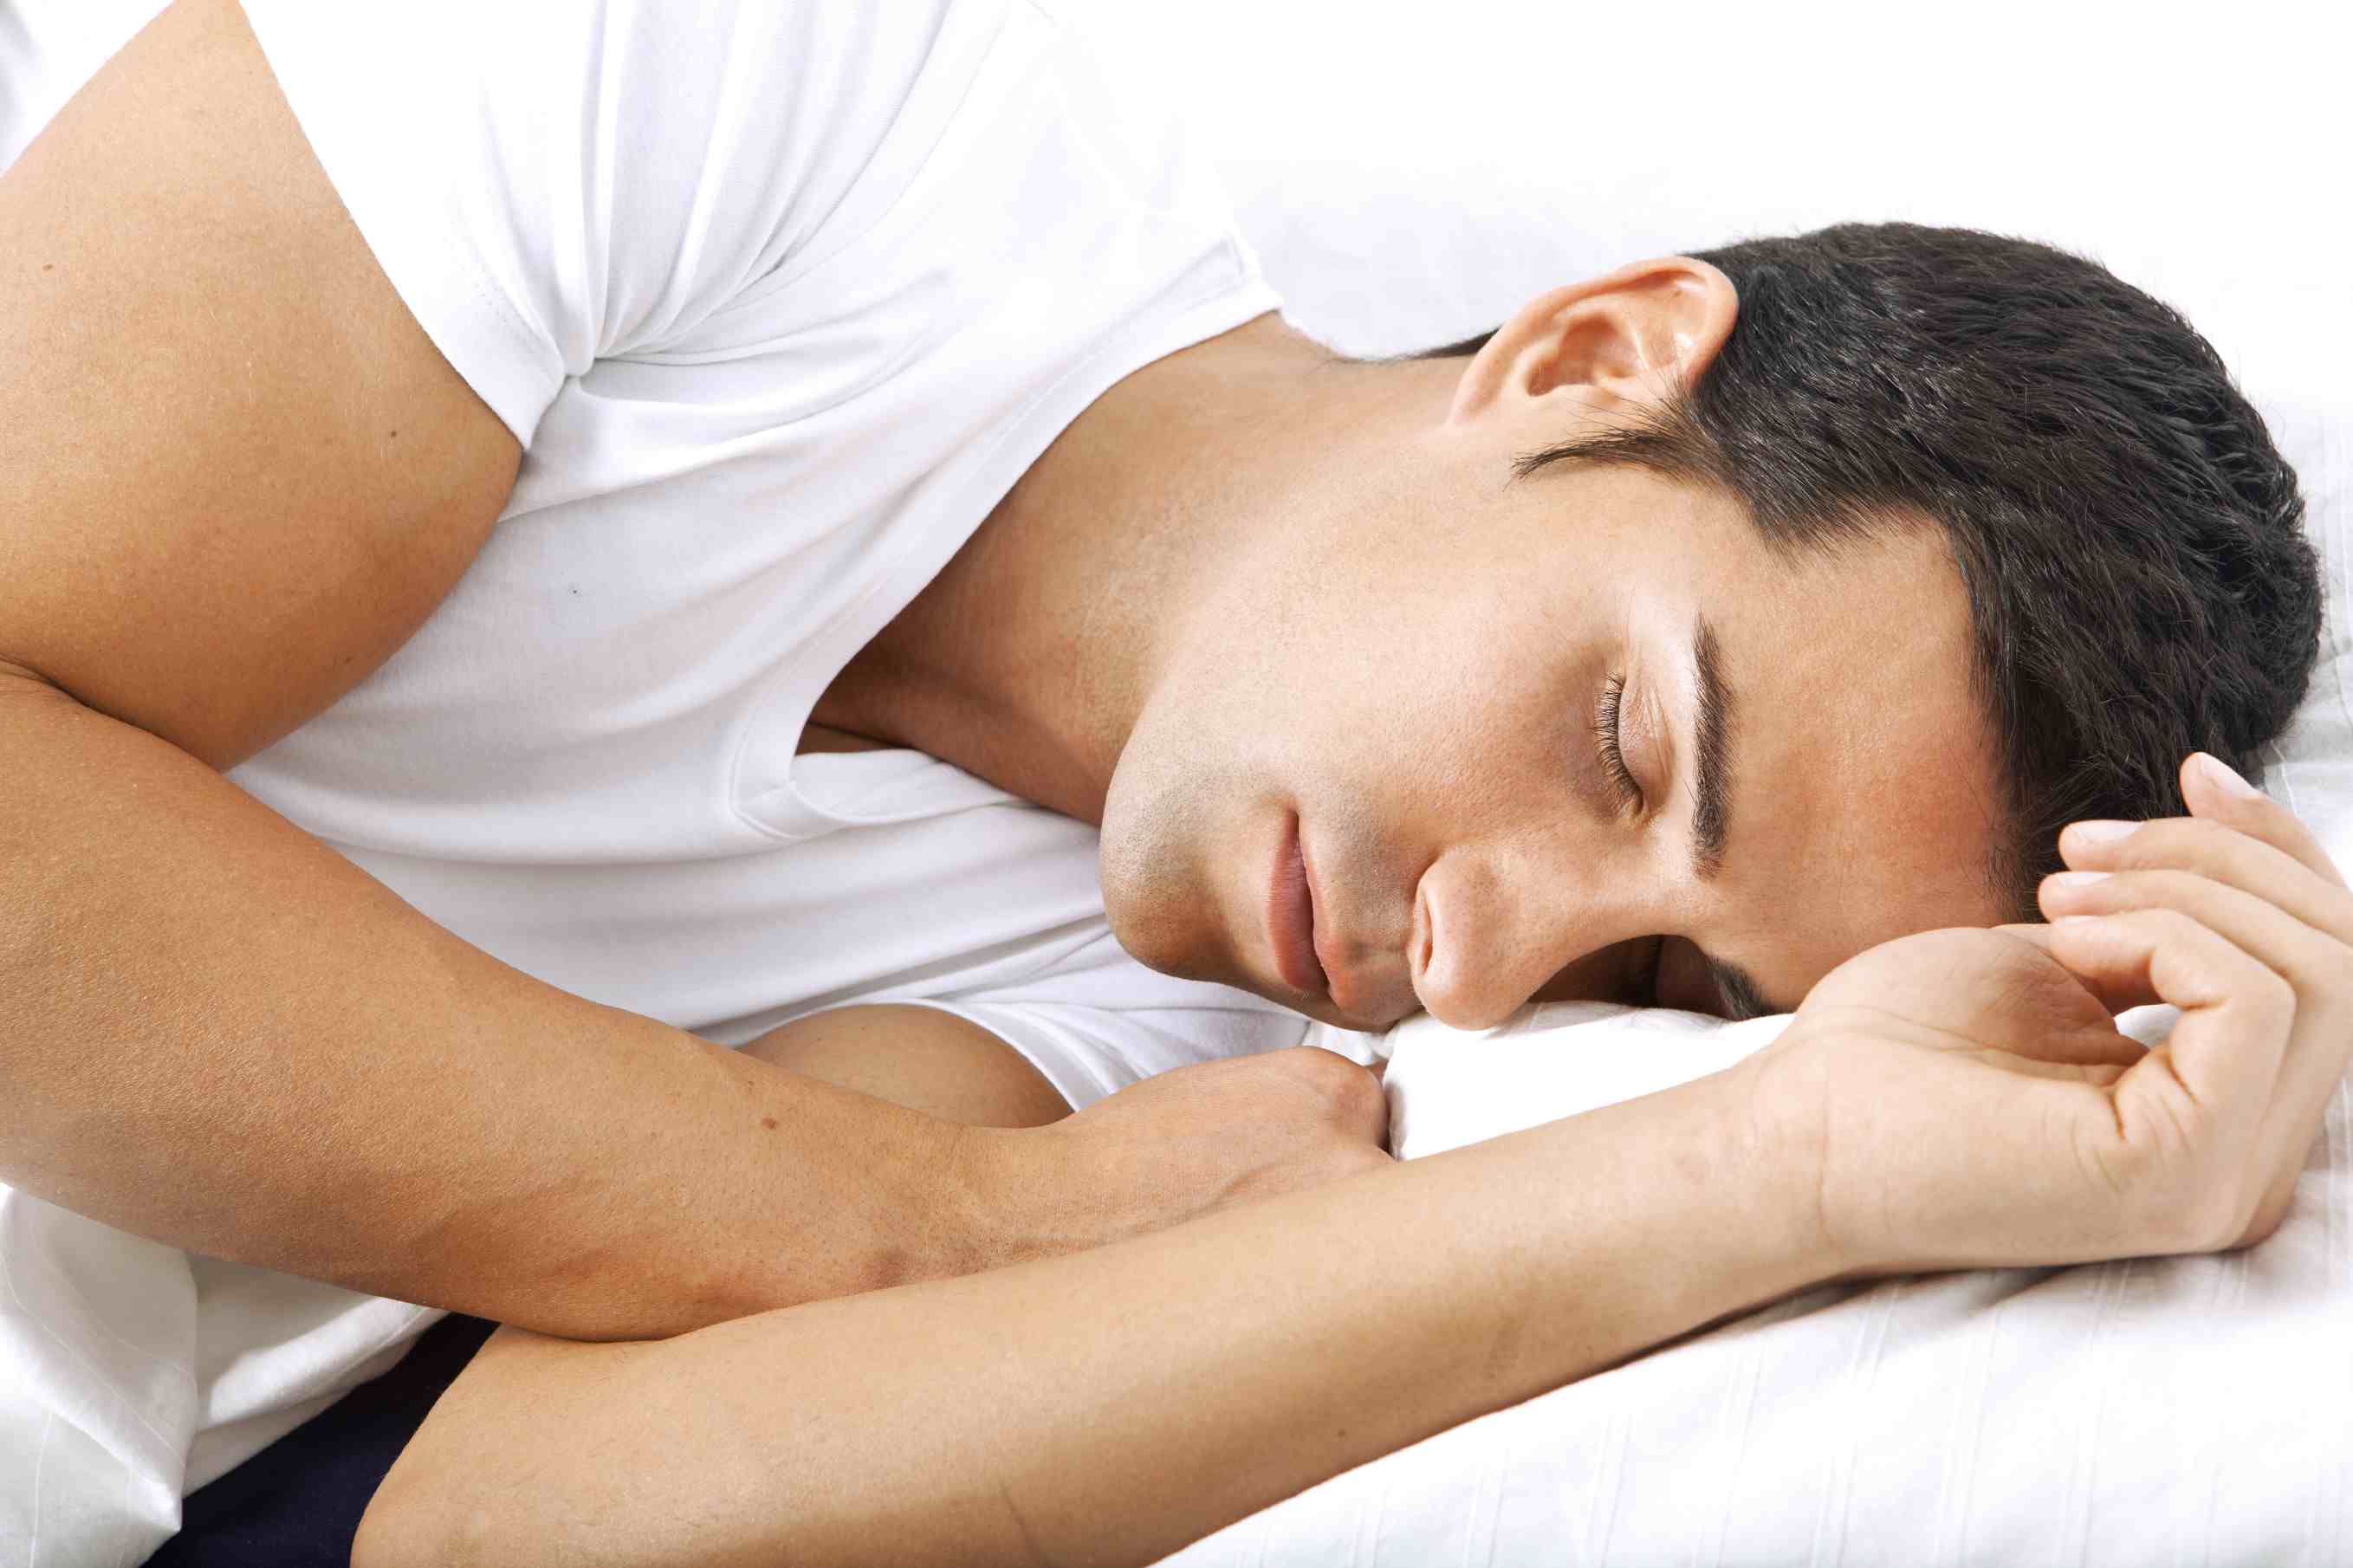 Los españoles duermen una media de siete horas diarias, los hombres diez minutos más que las mujeres